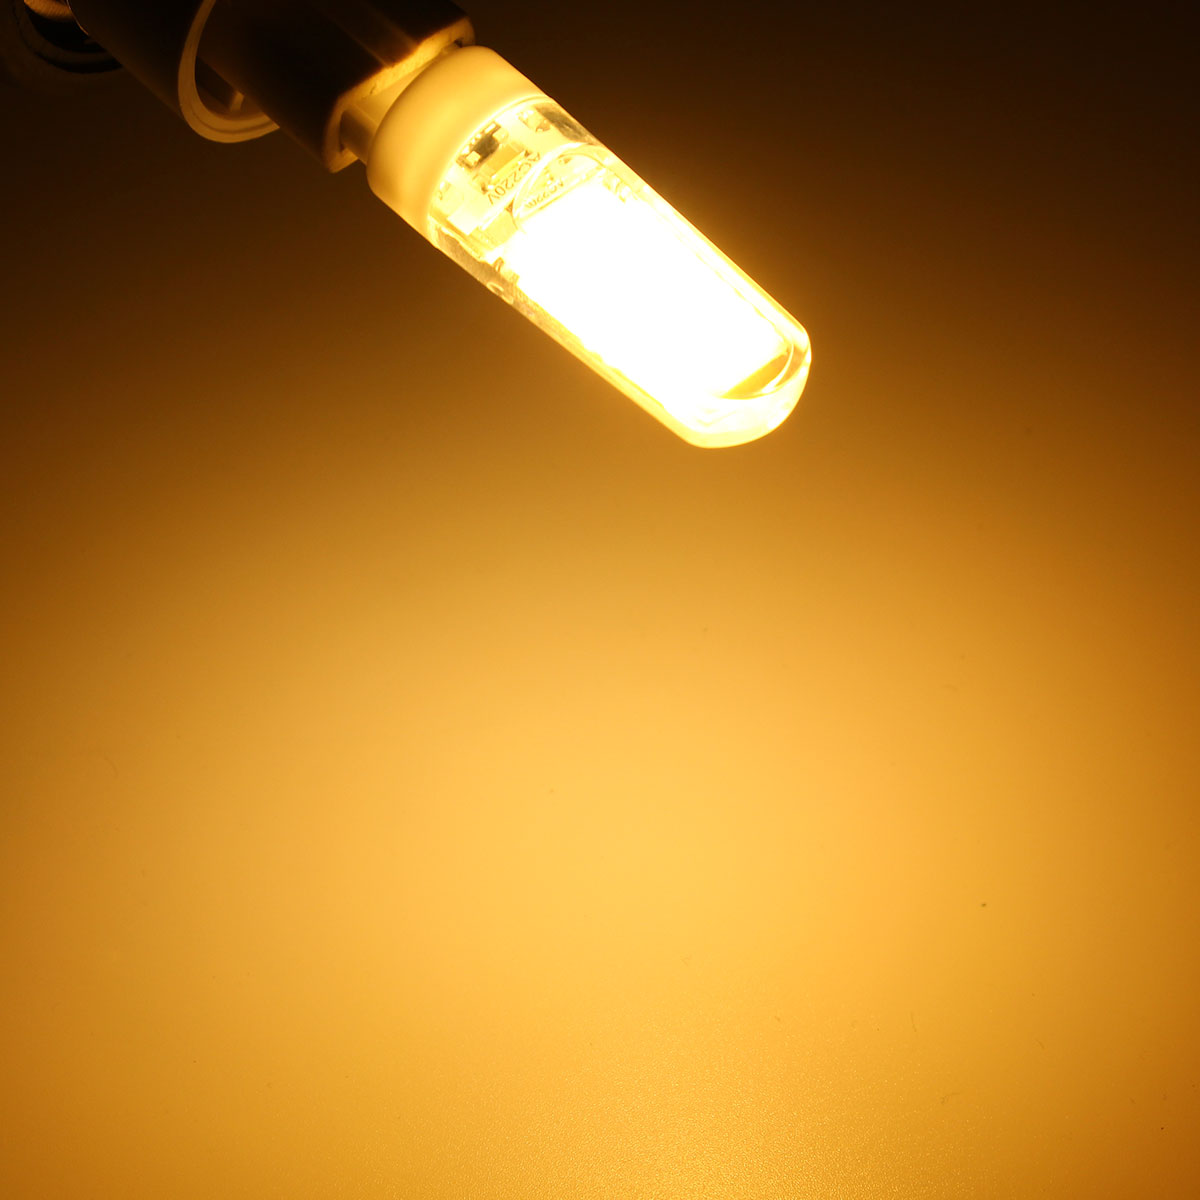 G9-LED-3W-Pure-White-Warm-White-COB-LED-PC-Material-Light-Lamp-Bulb-AC220V-1062195-1